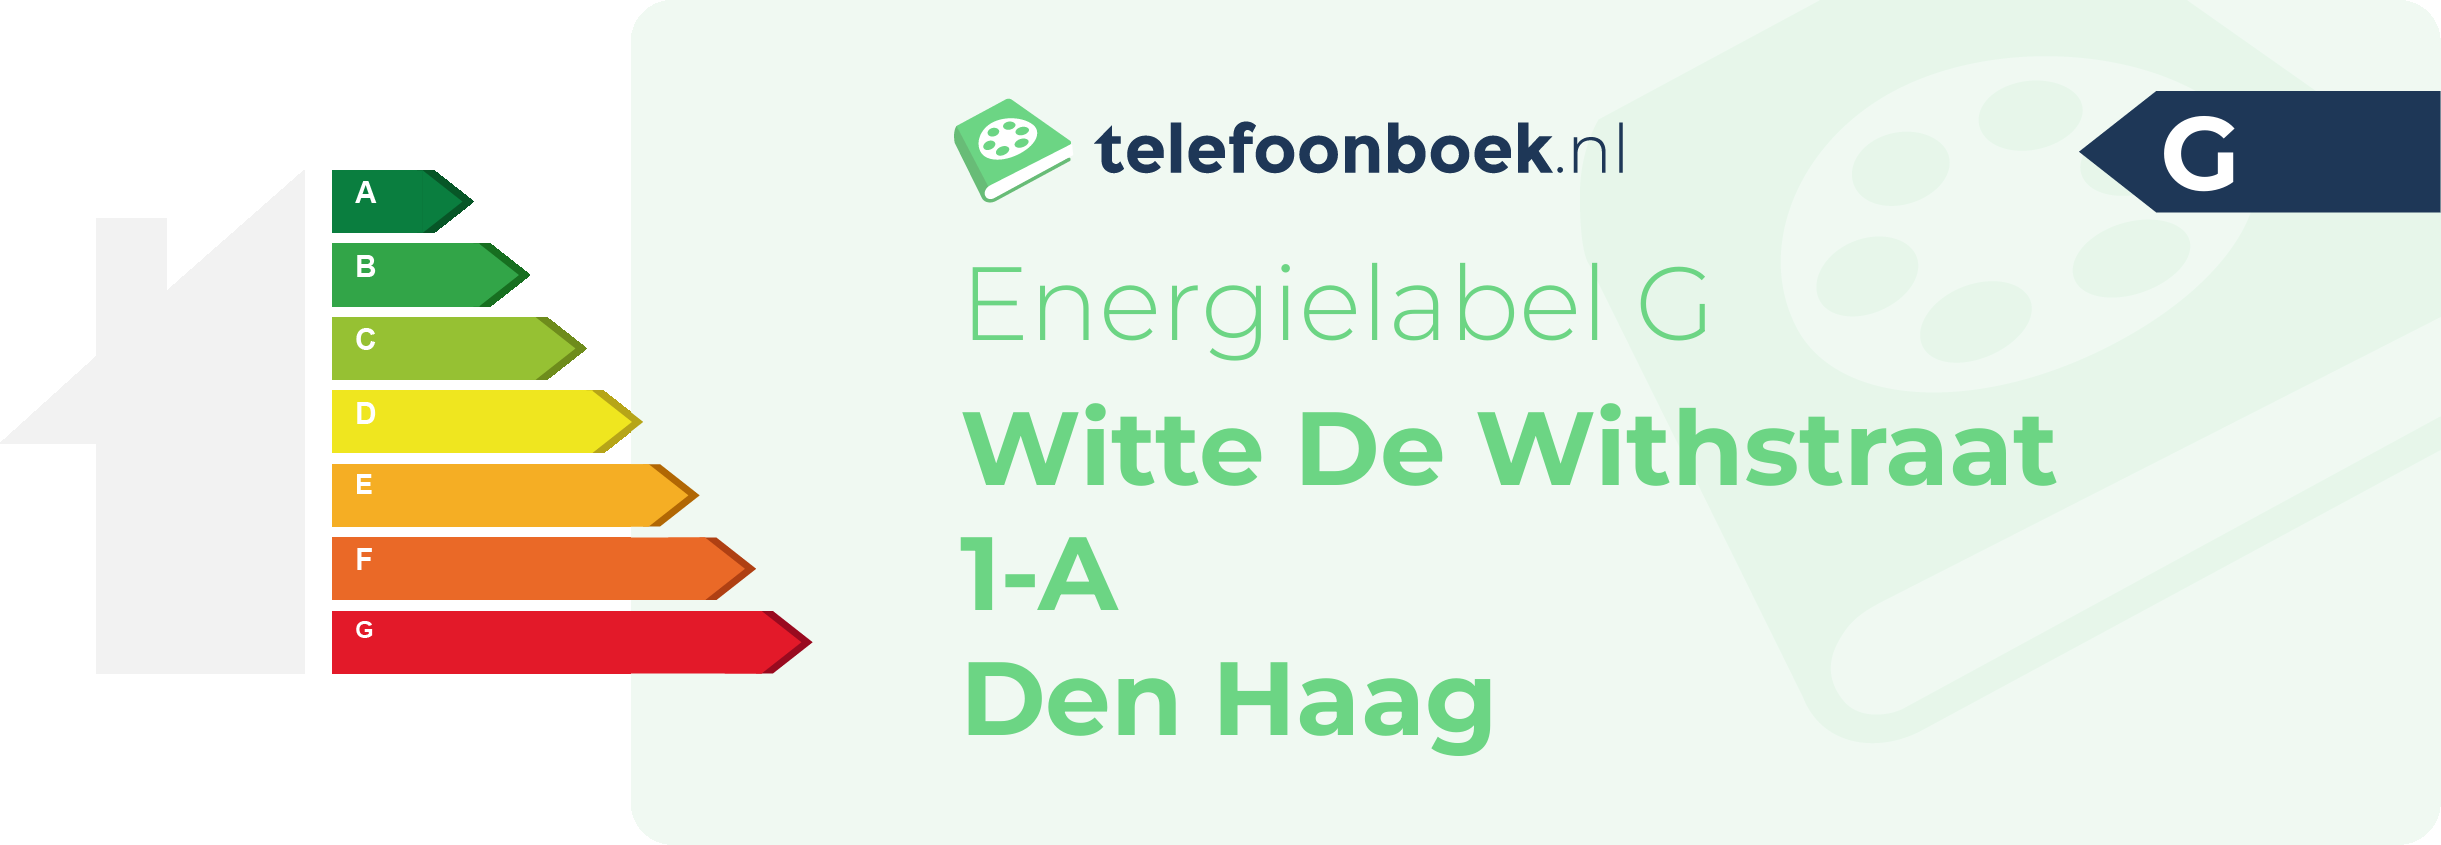 Energielabel Witte De Withstraat 1-A Den Haag